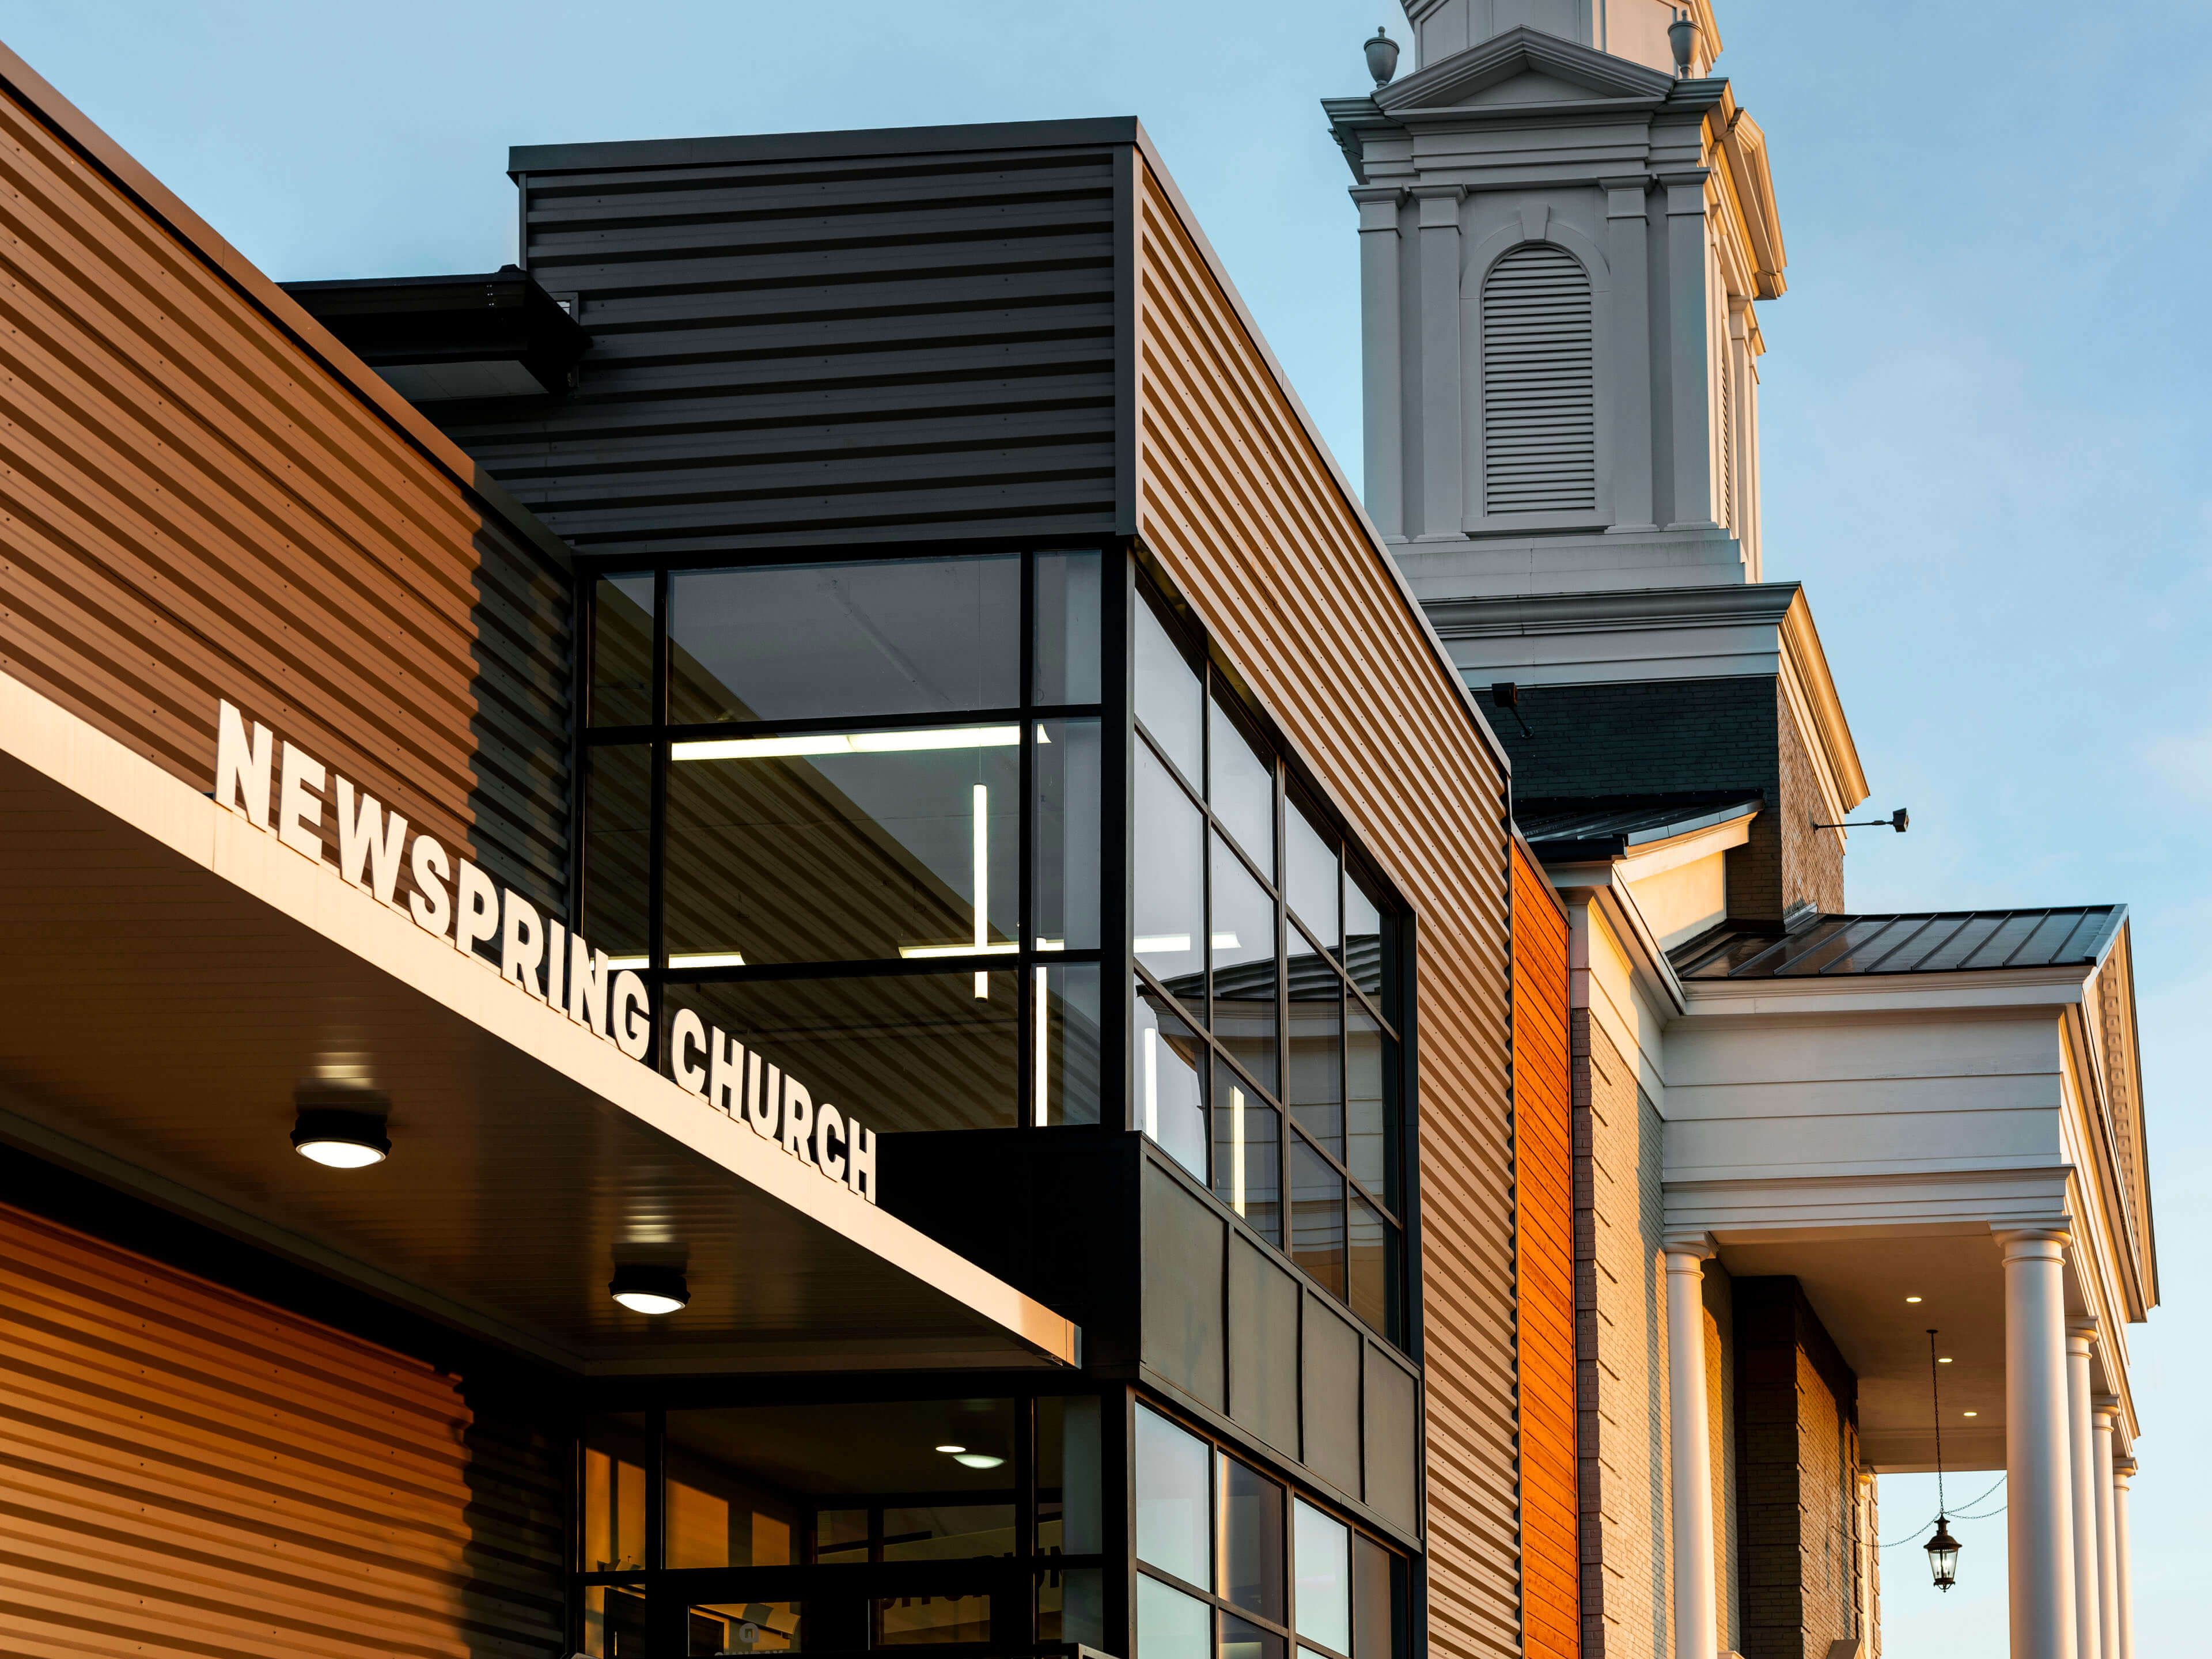 NewSpring Church - Eastlan Campus - NewSpring Church - Eastlan Campus